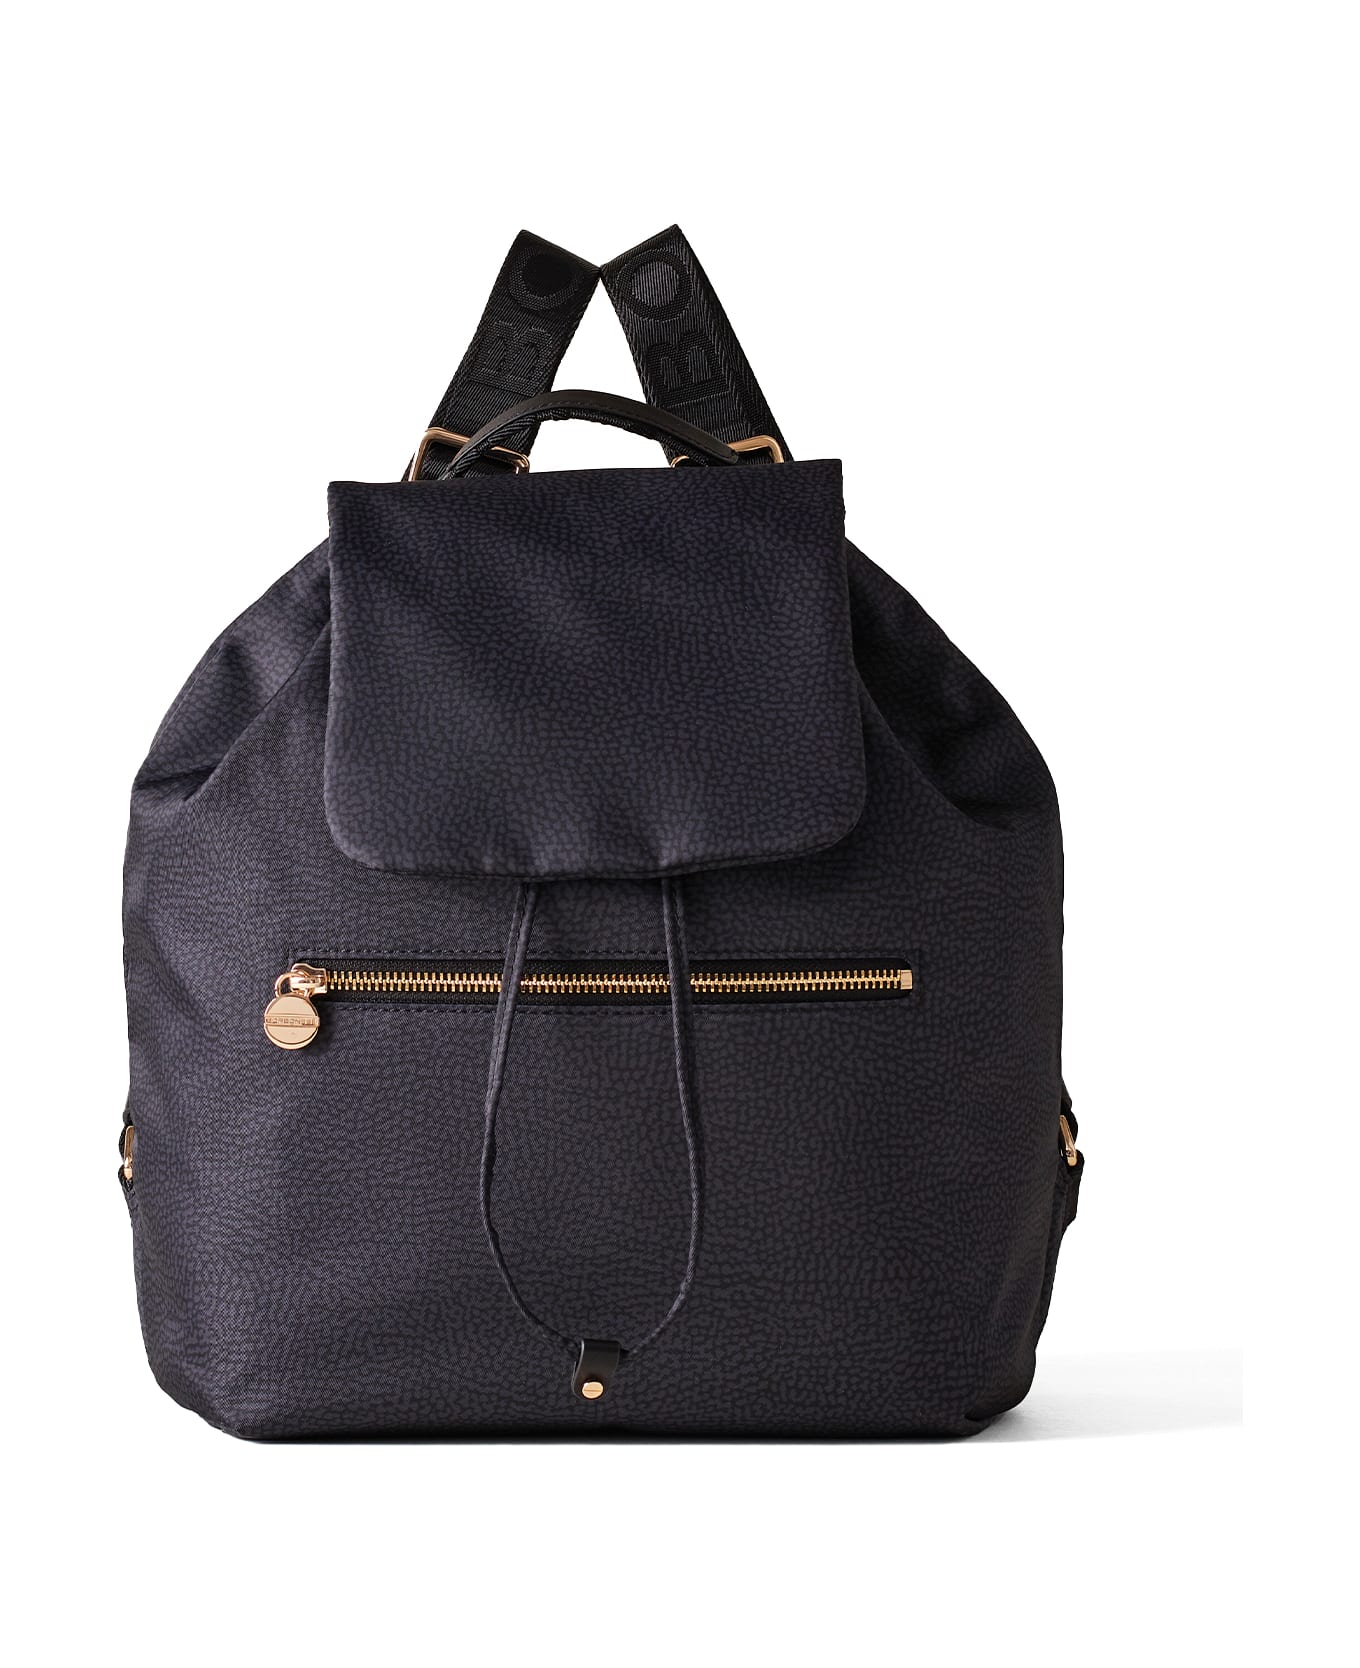 Borbonese Eco Line Medium Backpack In Op Fabric - DARK BLACK